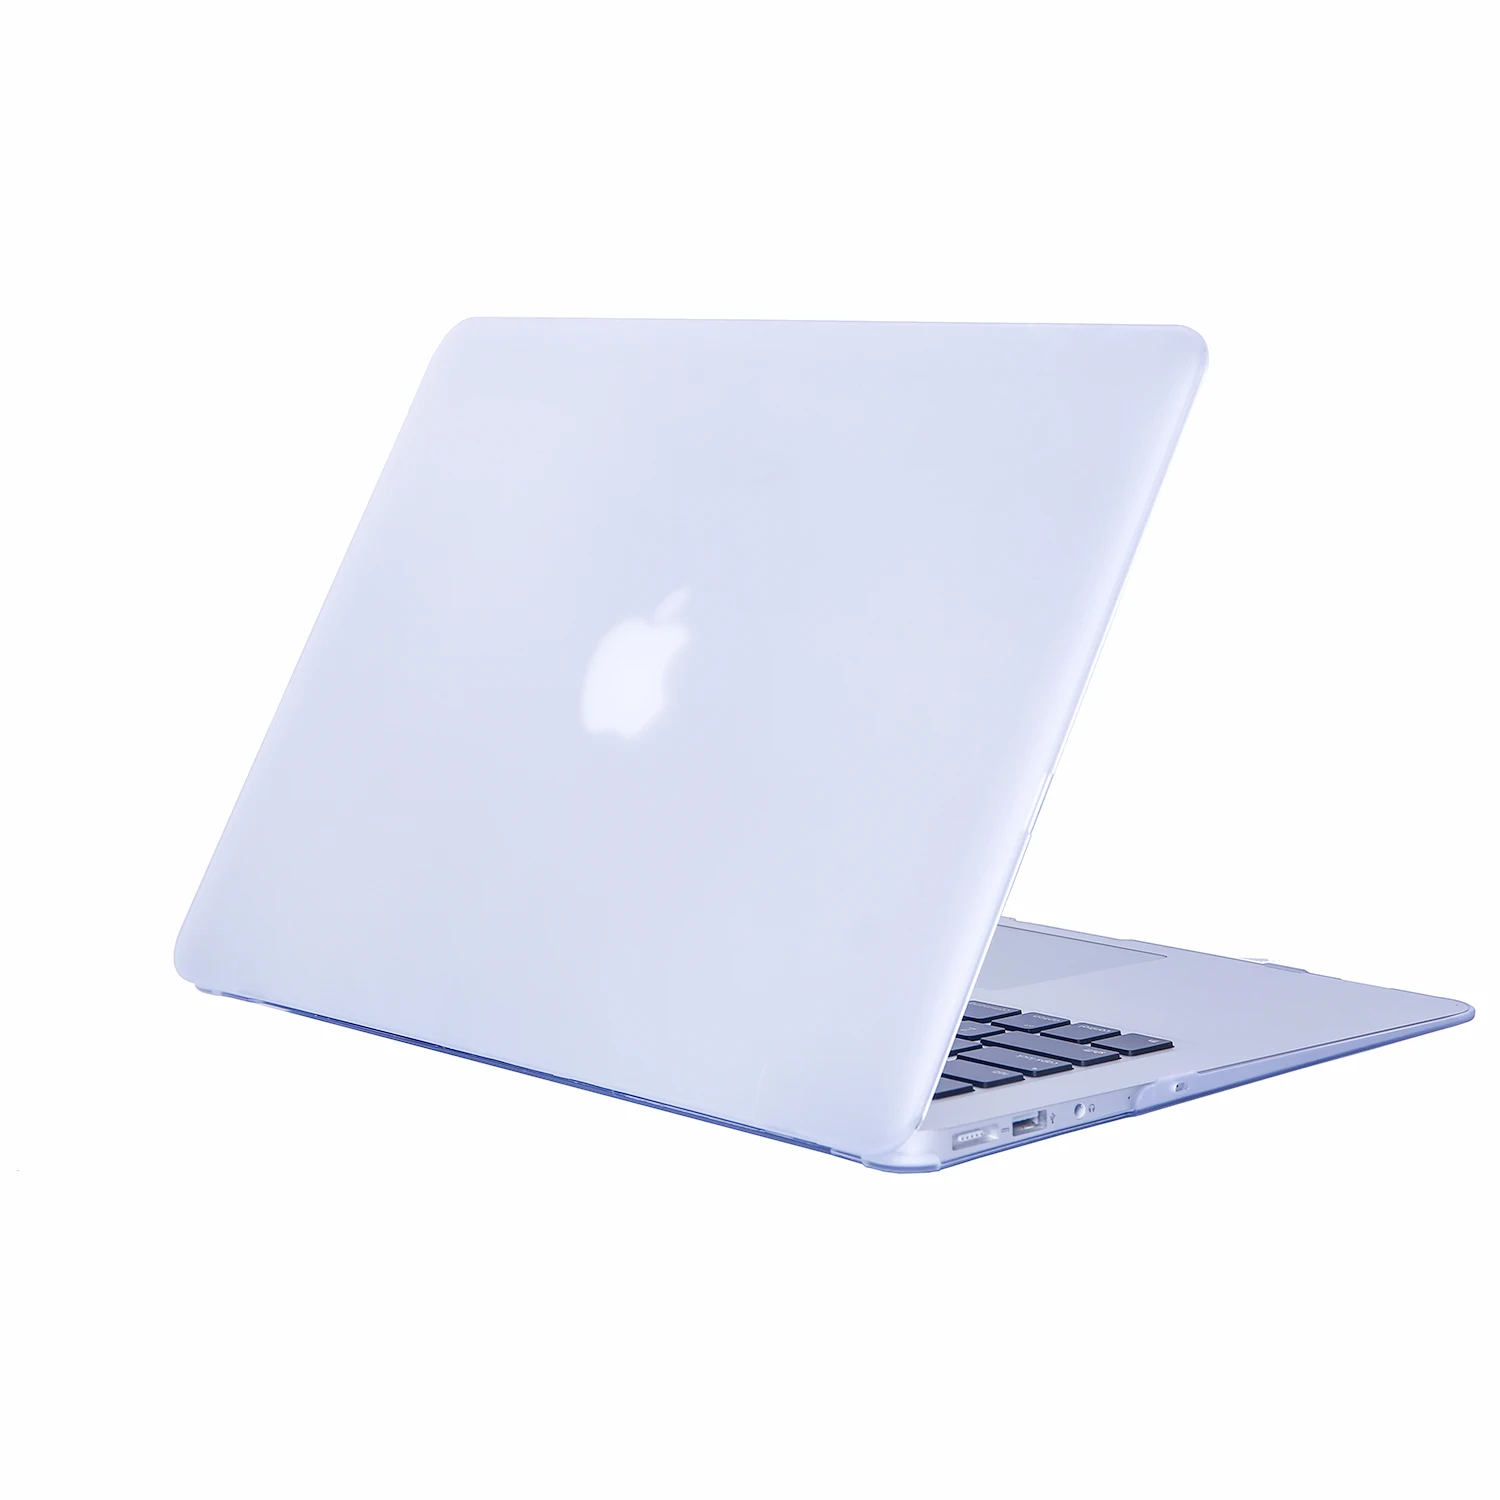 Чехол для Mac Book Air 13, прозрачный защитный чехол для Macbook Air Pro retina 12 15 13 A2159, чехол для ноутбука Mac Book notebook